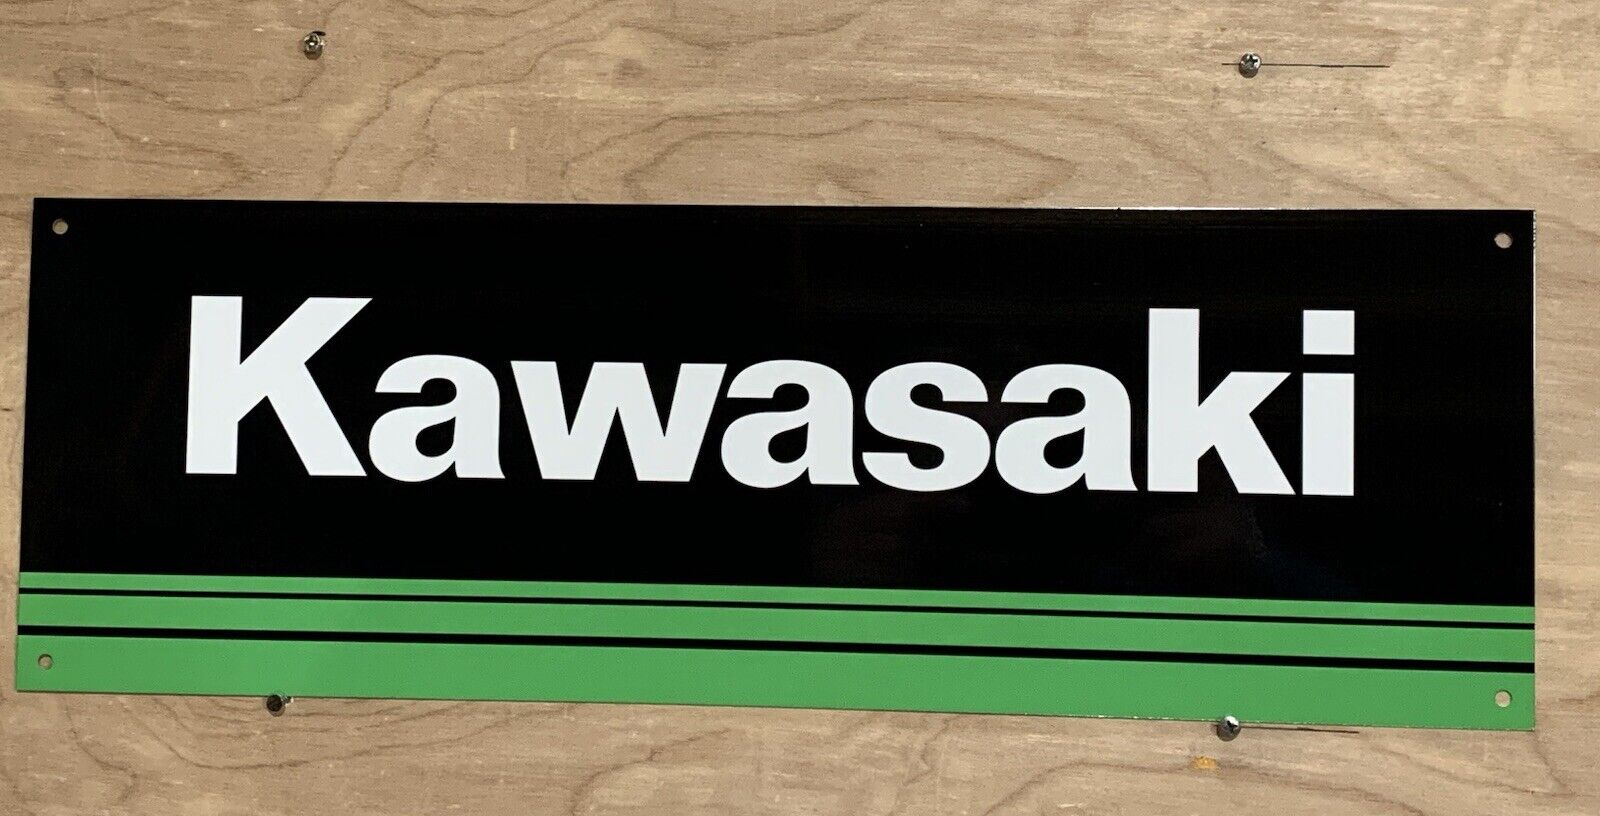 Kawasaki Motorcycle Reproduction Racing Garage Sign